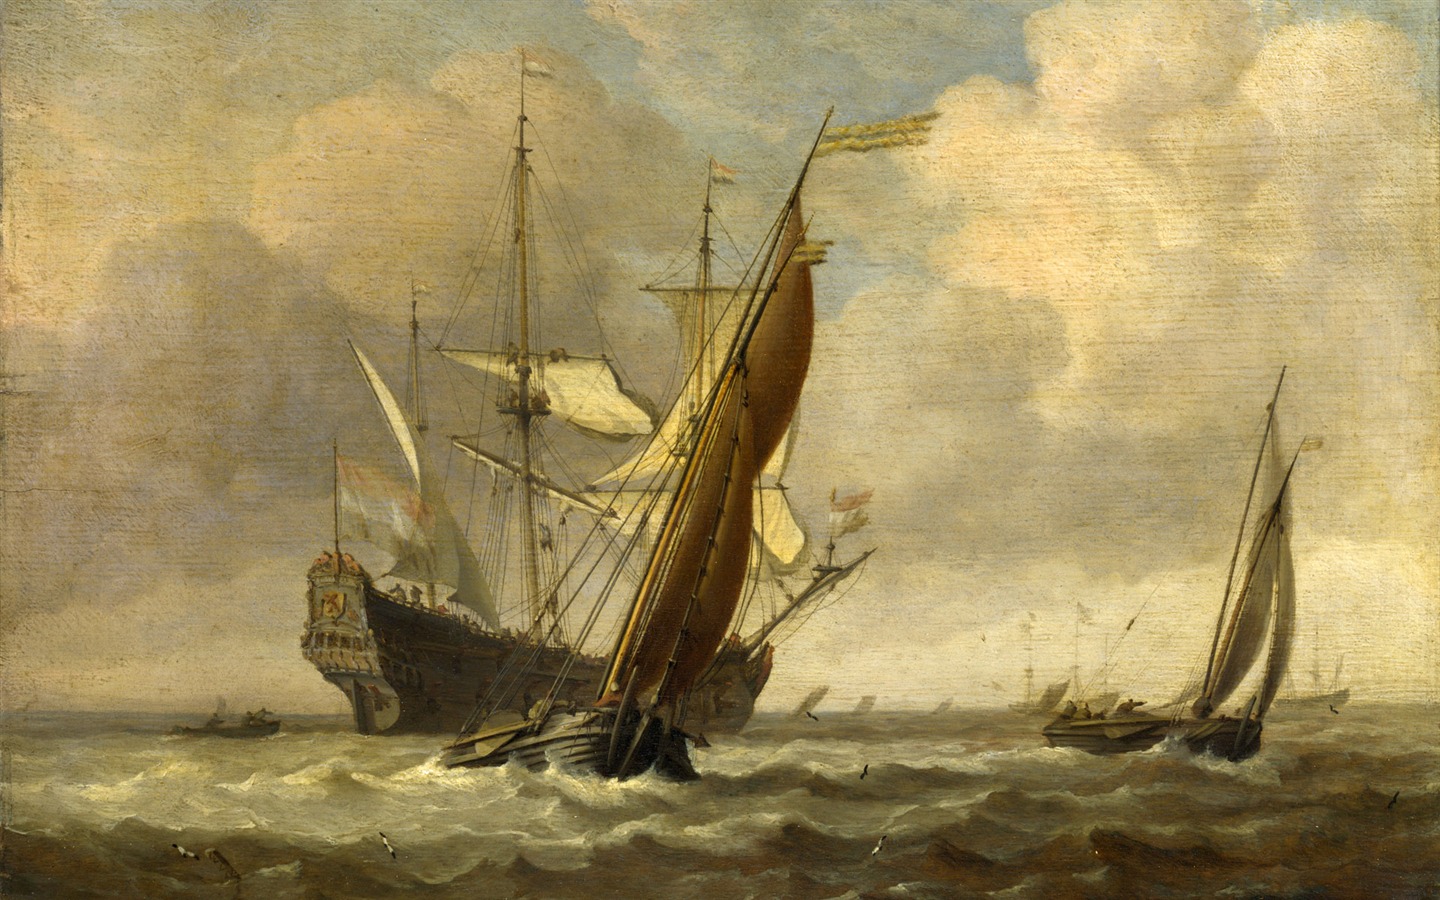 伦敦画廊帆船 壁纸(二)19 - 1440x900